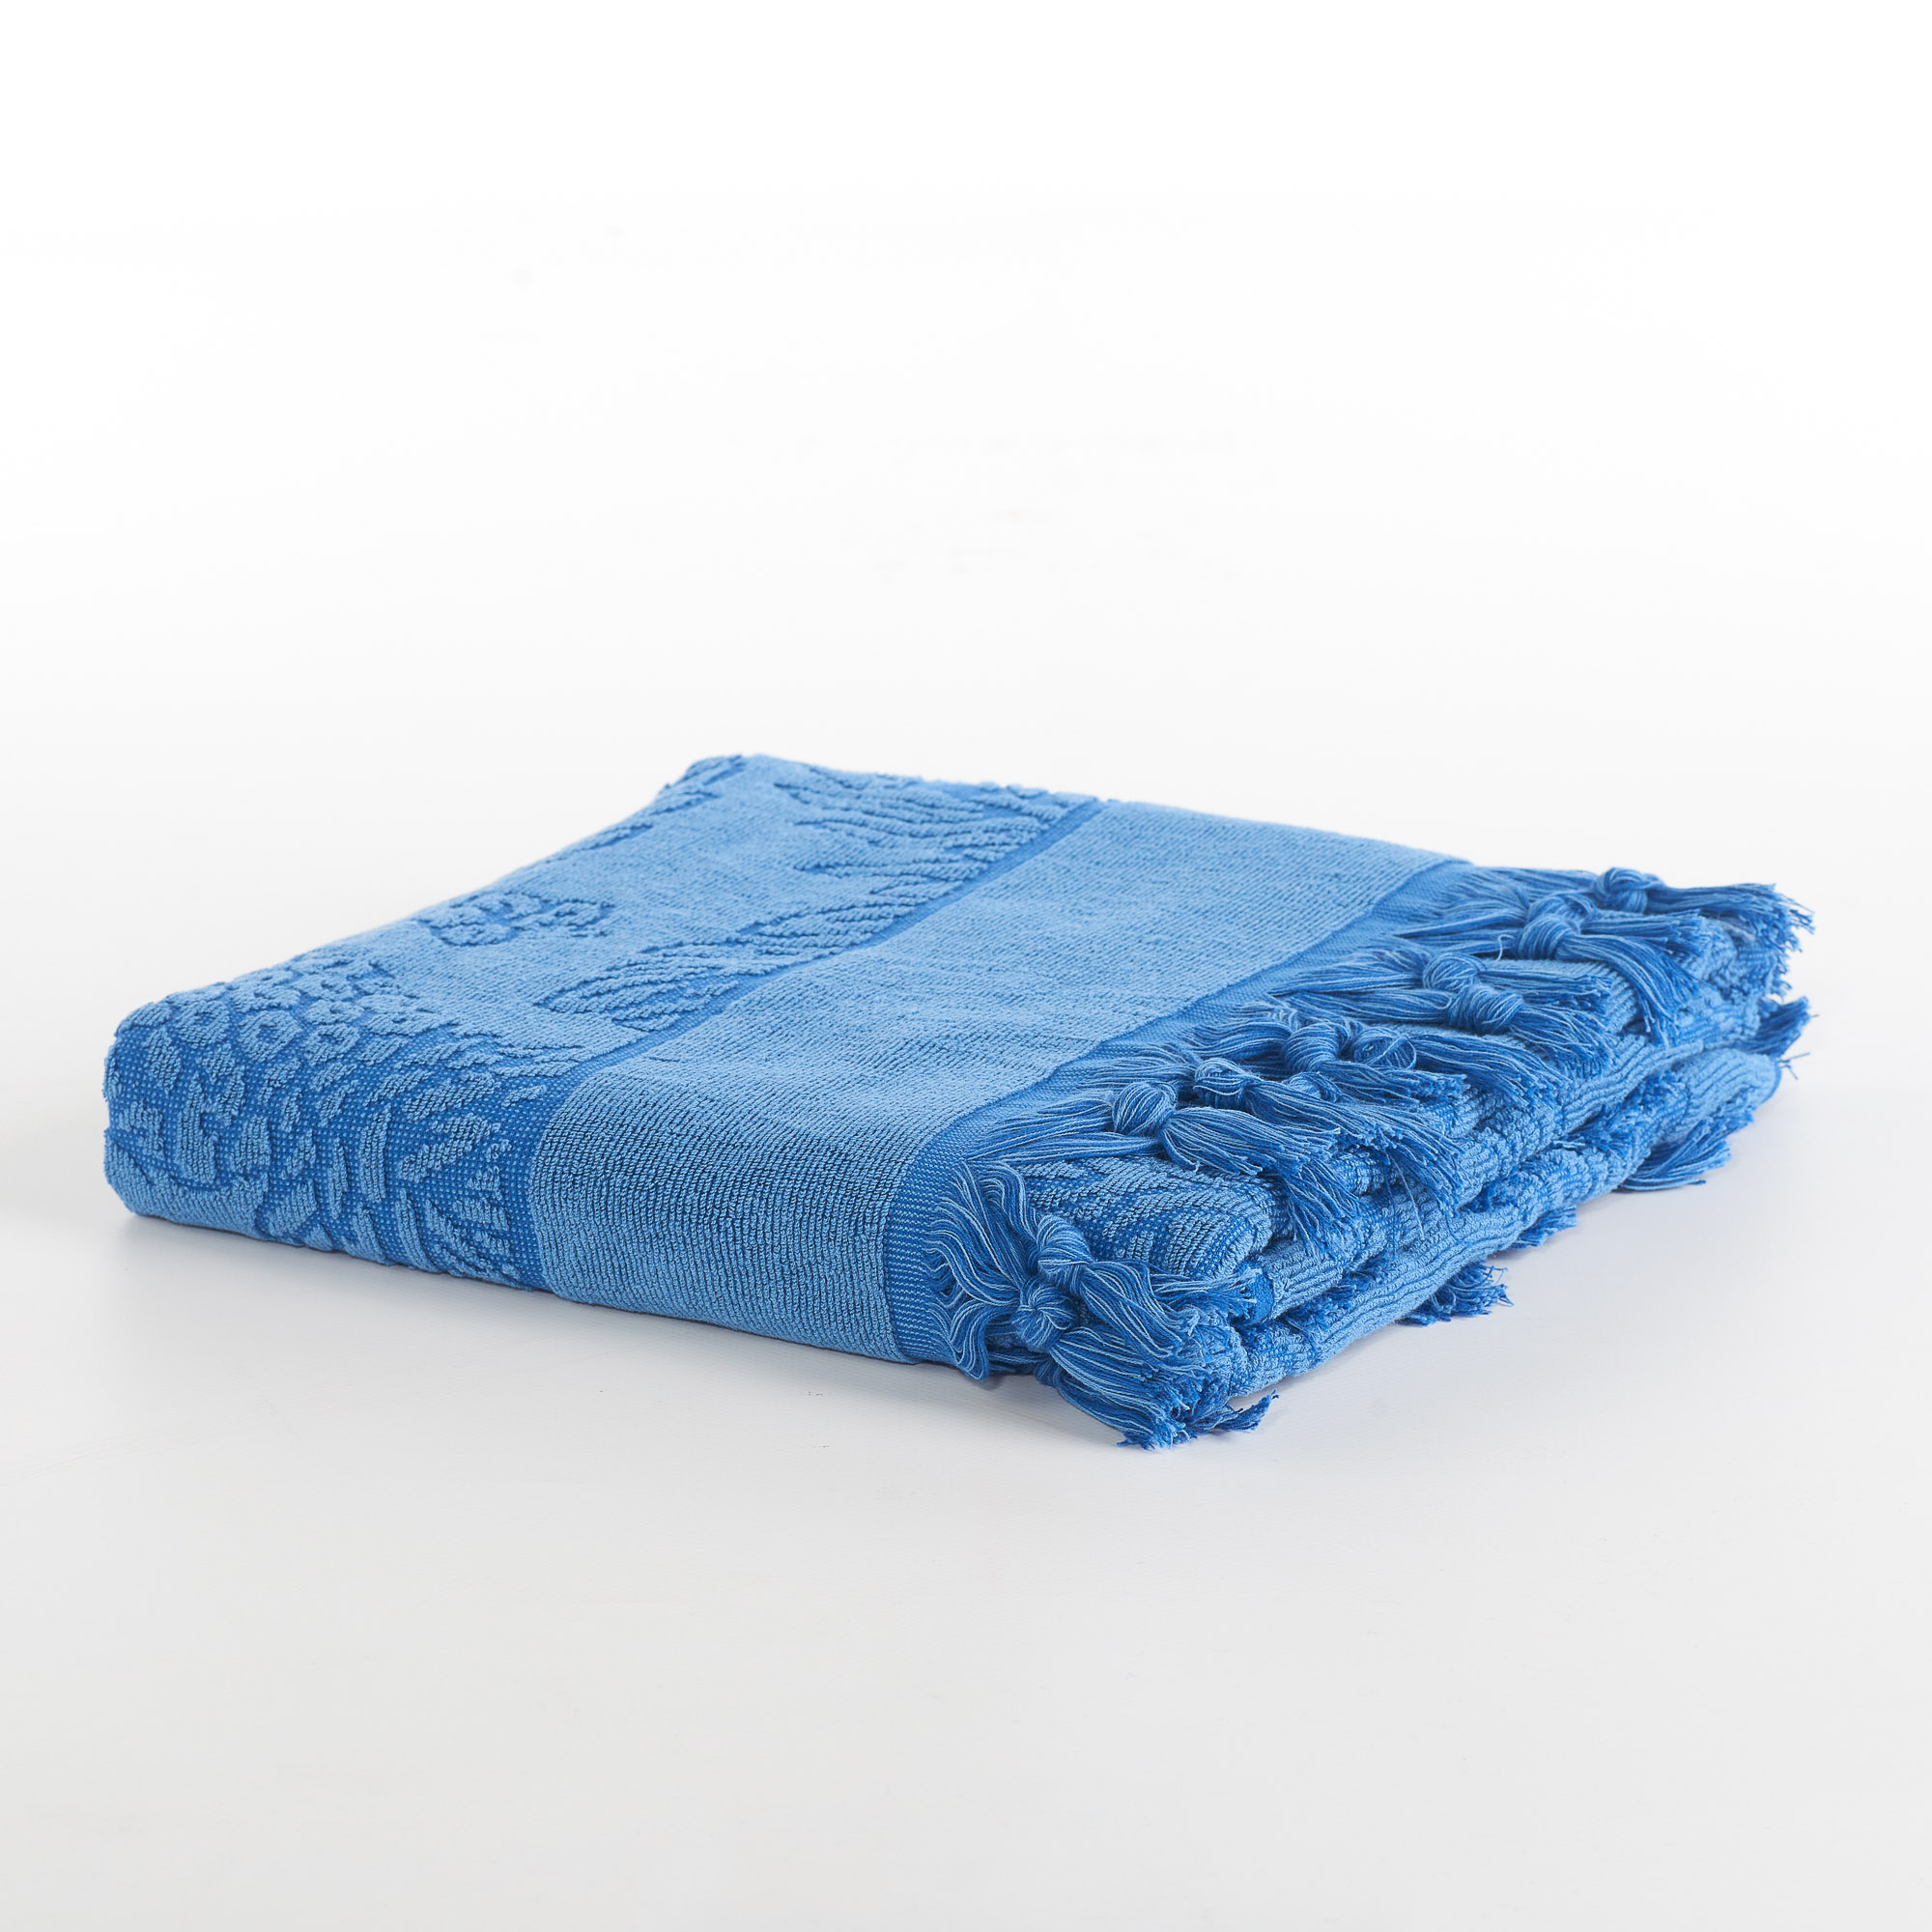 Pineapple microsponge beach towel blu capri Maè